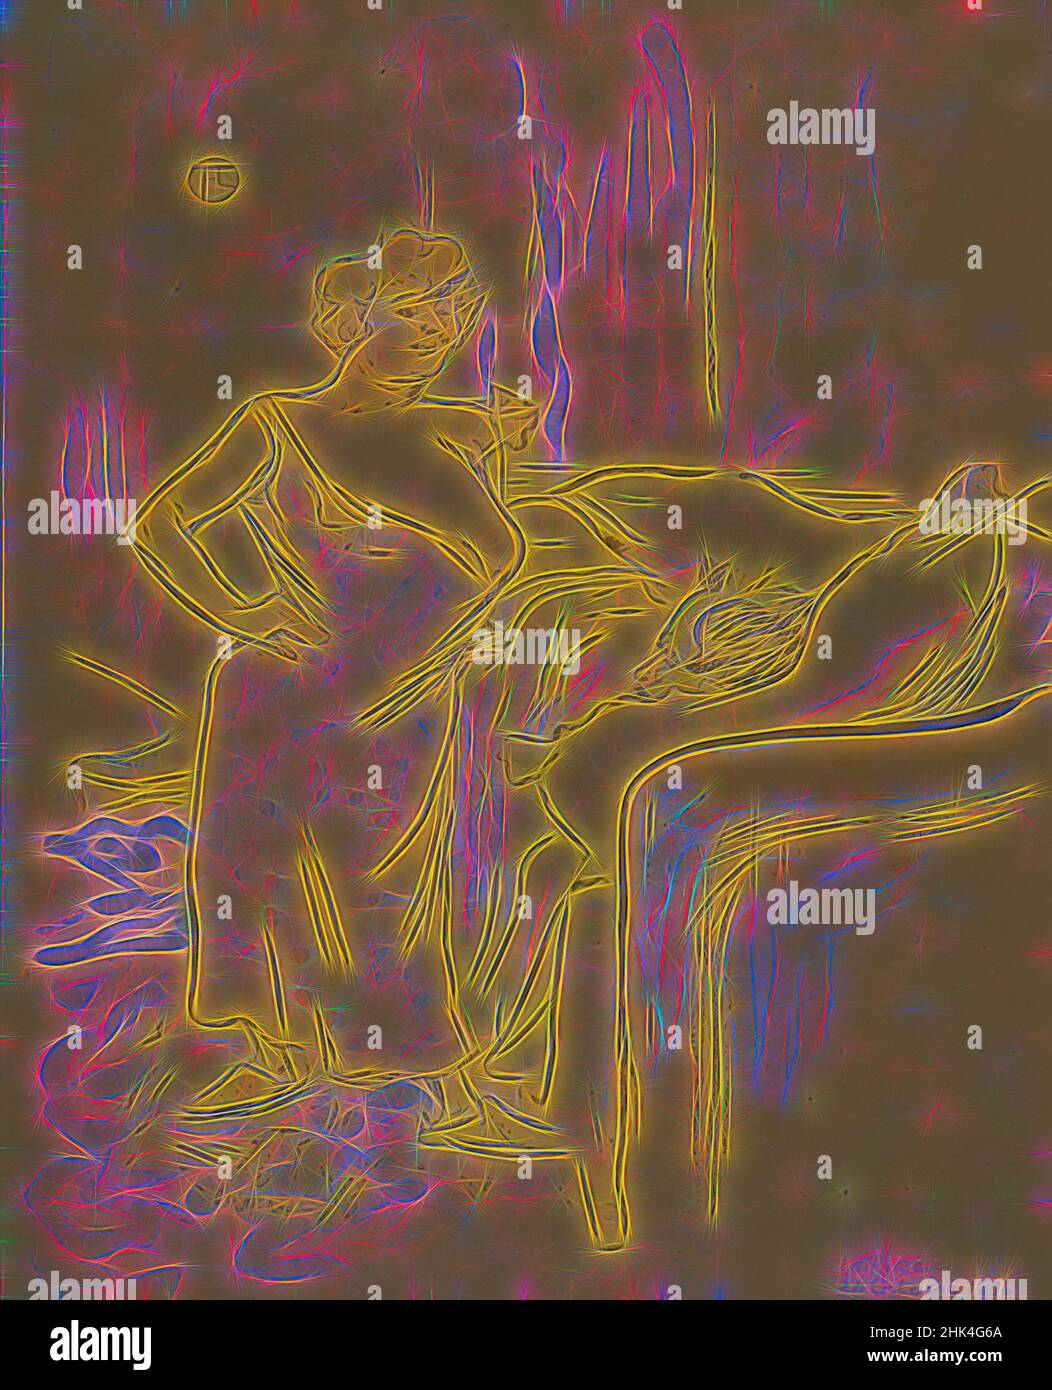 Inspiriert von Qu'est-ce qu'on va dejeuner?, aus La Rire, Henri de Toulouse-Lautrec, Französisch, 1864-1901, Fotolithographie auf Zeitungspapier, 24. Oktober 1896, 9 13/16 x 7 13/16 Zoll, 24,9 x 19,8 cm, Figuren, neu gestaltet von Artotop. Klassische Kunst neu erfunden mit einem modernen Twist. Design von warmen fröhlichen Leuchten der Helligkeit und Lichtstrahl Strahlkraft. Fotografie inspiriert von Surrealismus und Futurismus, umarmt dynamische Energie der modernen Technologie, Bewegung, Geschwindigkeit und Kultur zu revolutionieren Stockfoto